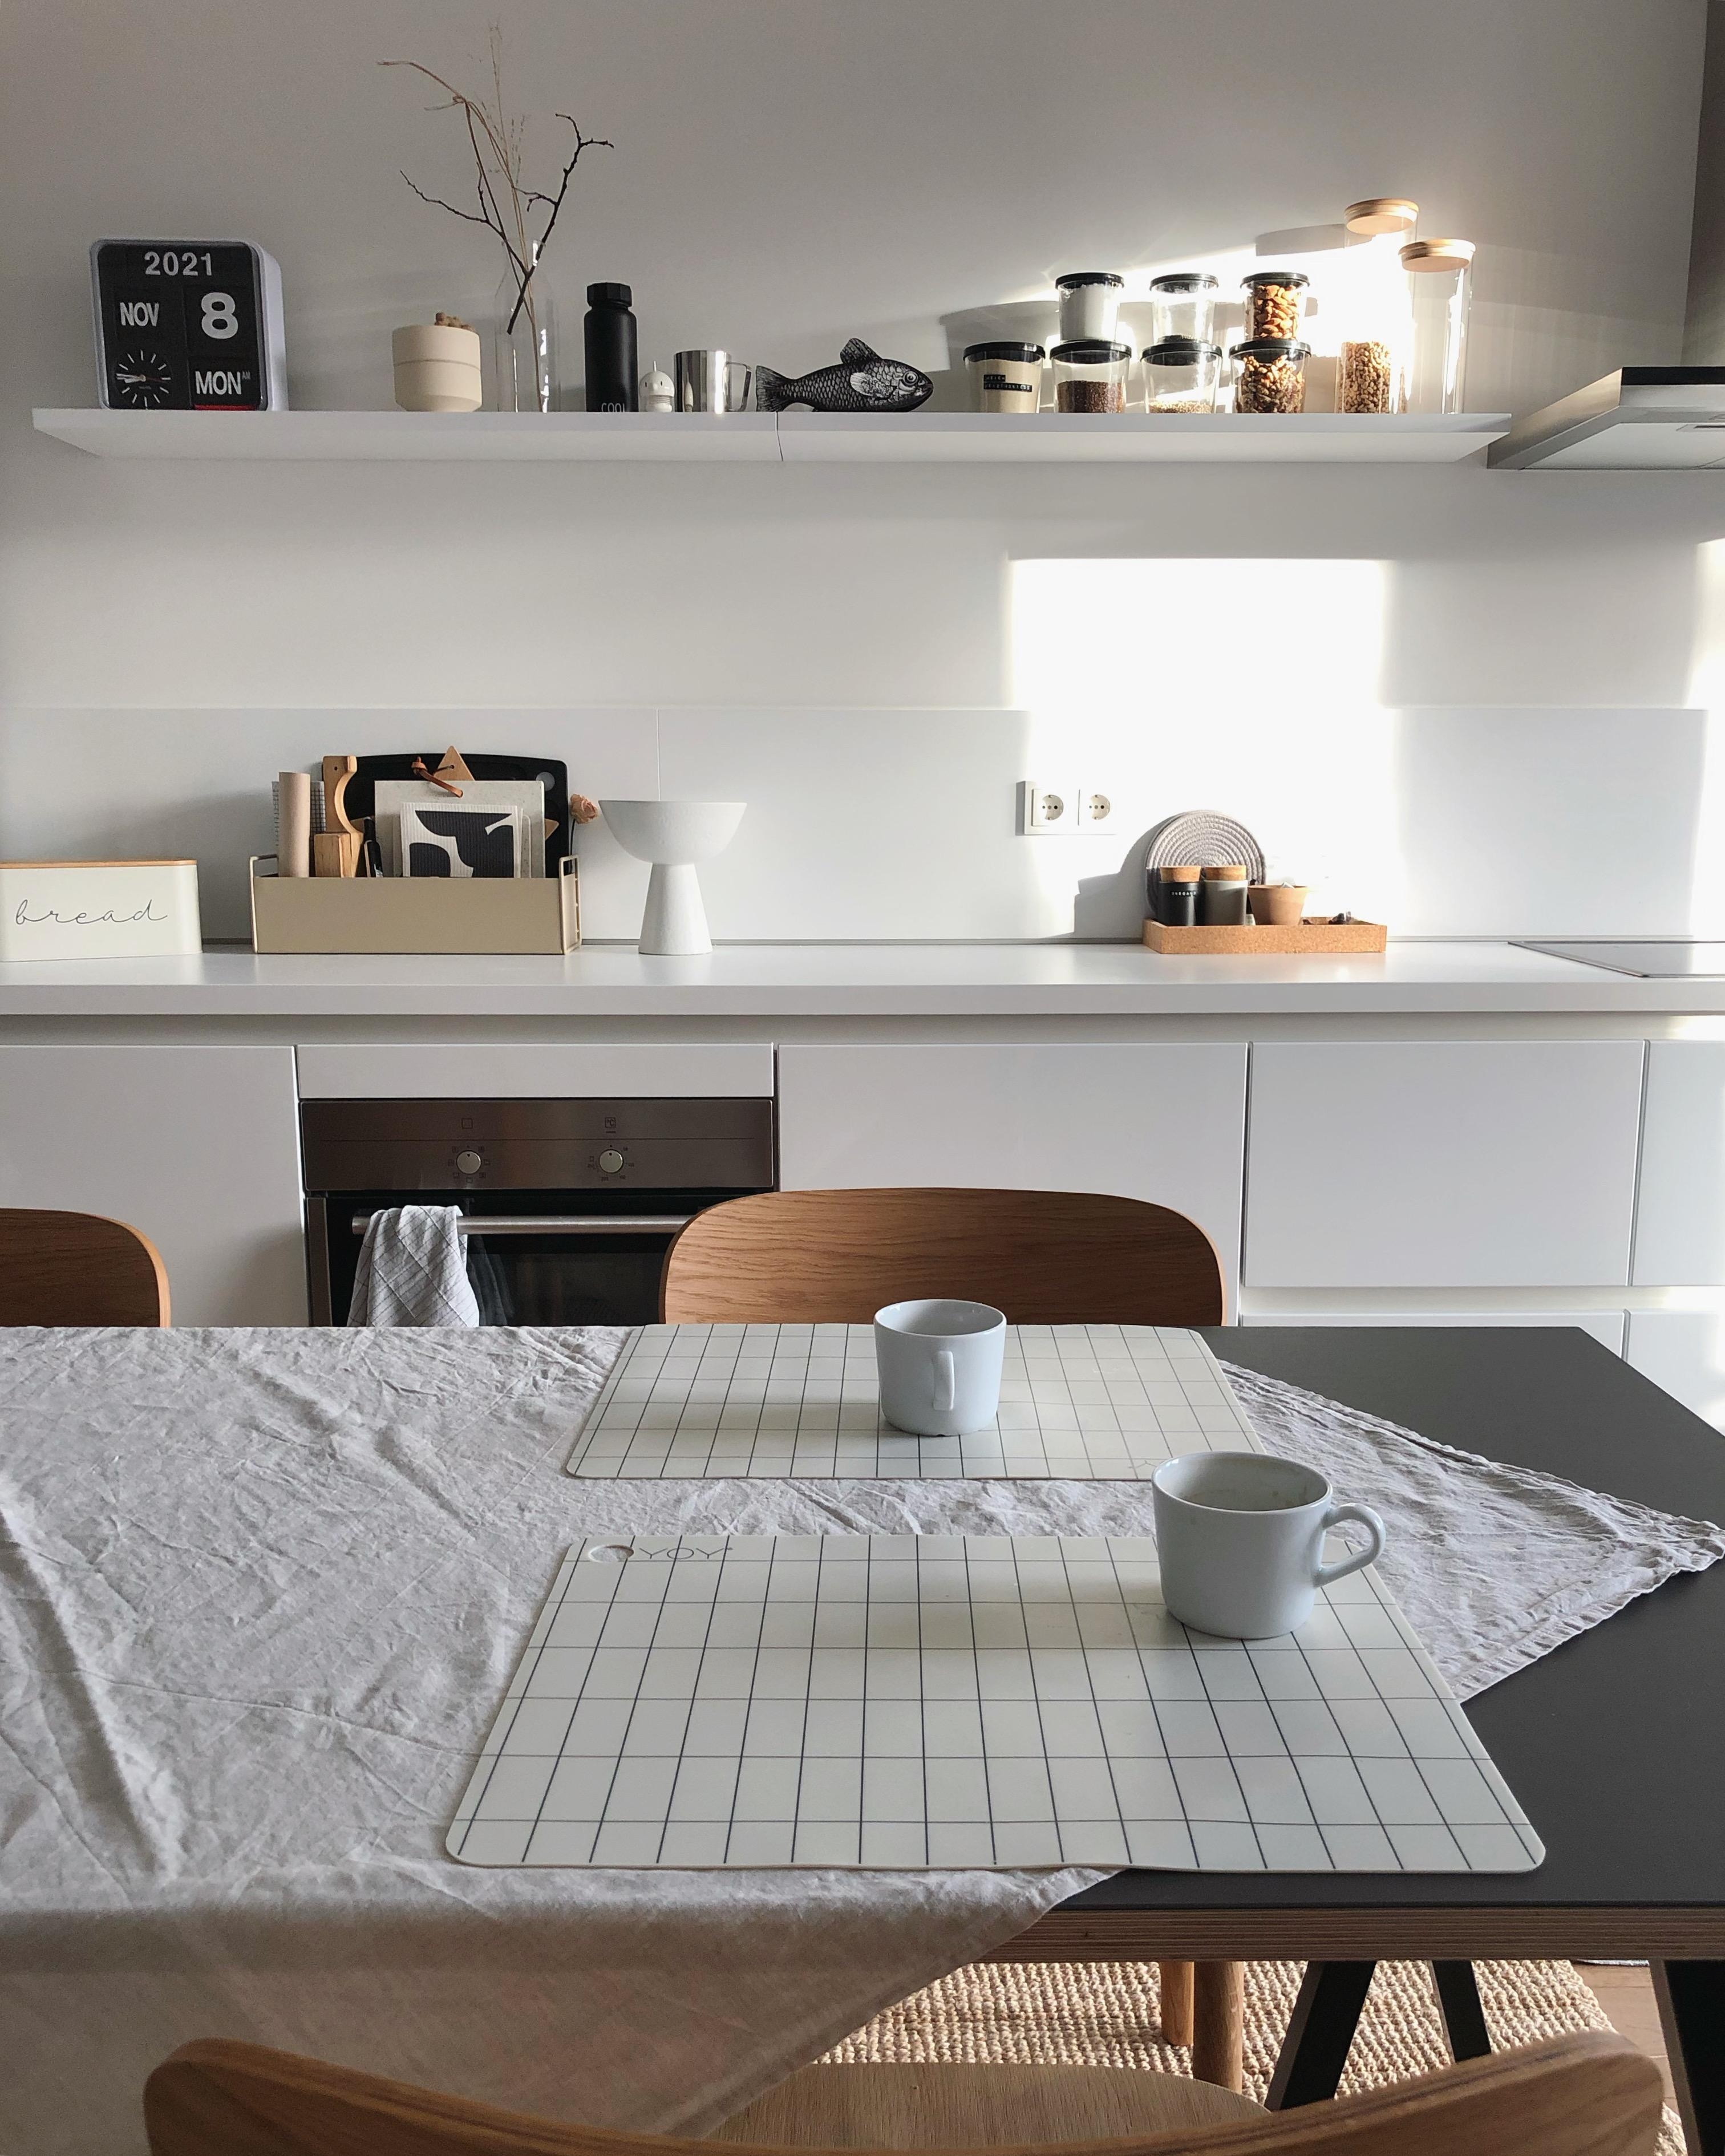 #küche #kitchen #nordicliving #skandi #scandi #küchendetails #deko #dekoidee #regal #esstisch #couchstyle #interior